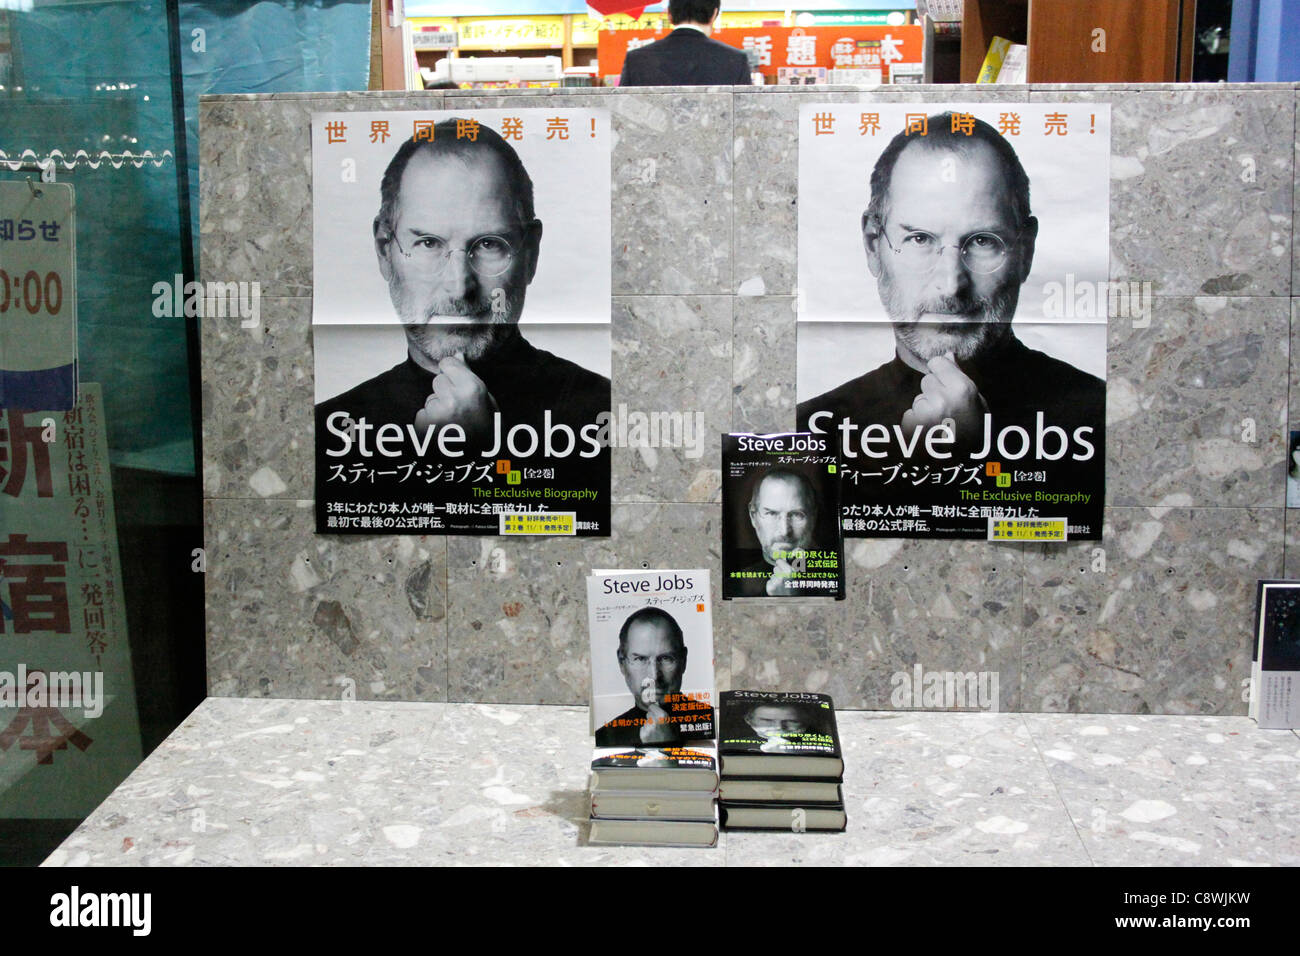 Co-fondateur d'Apple Steve Jobs' biographie autorisée 'Steve Jobs' version japonaise vol.1 et 2 sont les mieux vendre au Japon. Banque D'Images